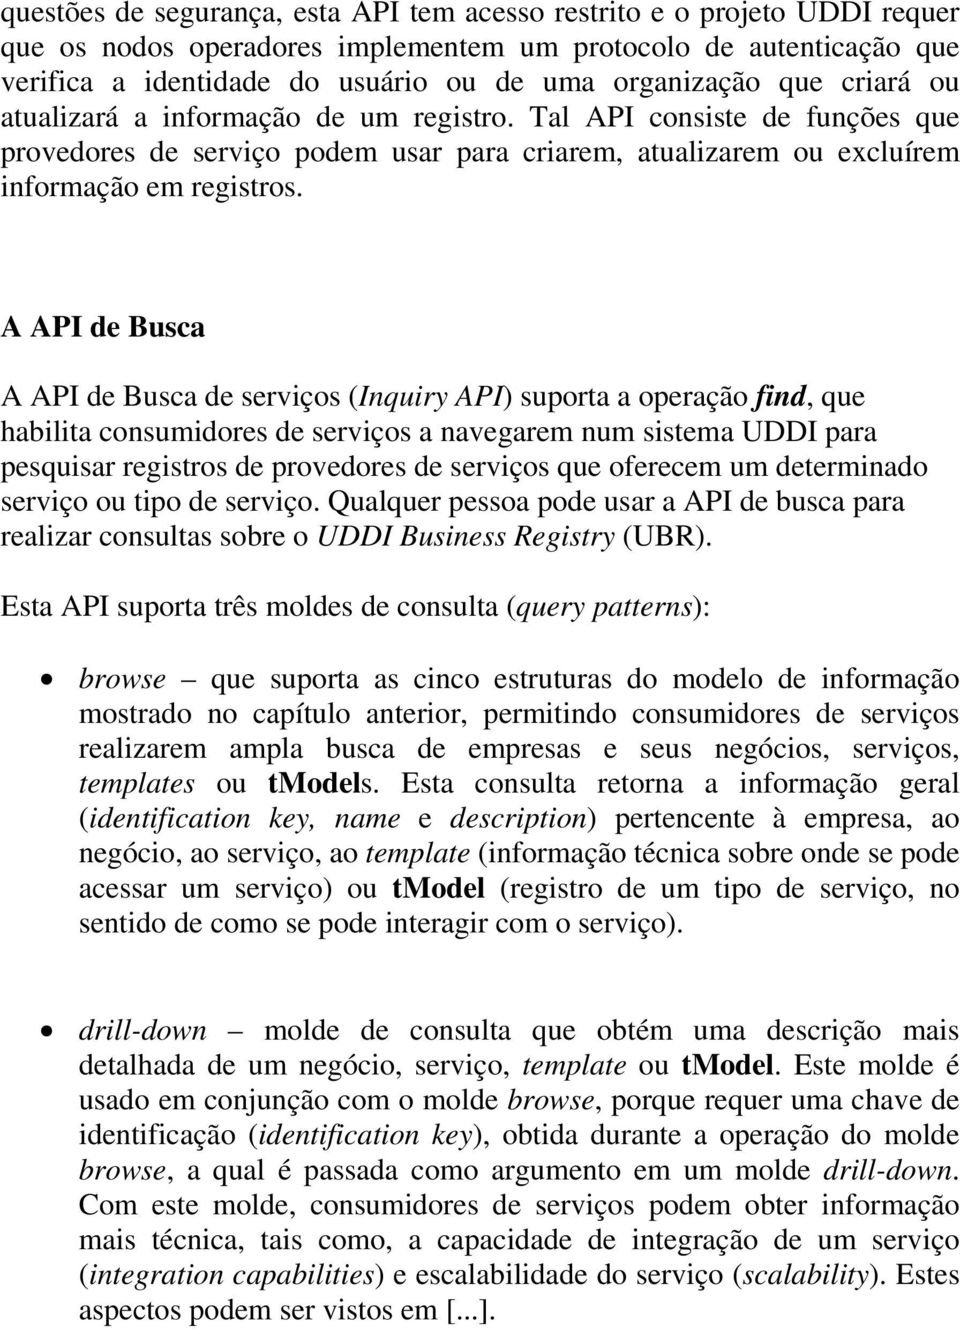 A API de Busca A API de Busca de serviços (Inquiry API) suporta a operação find, que habilita consumidores de serviços a navegarem num sistema UDDI para pesquisar registros de provedores de serviços